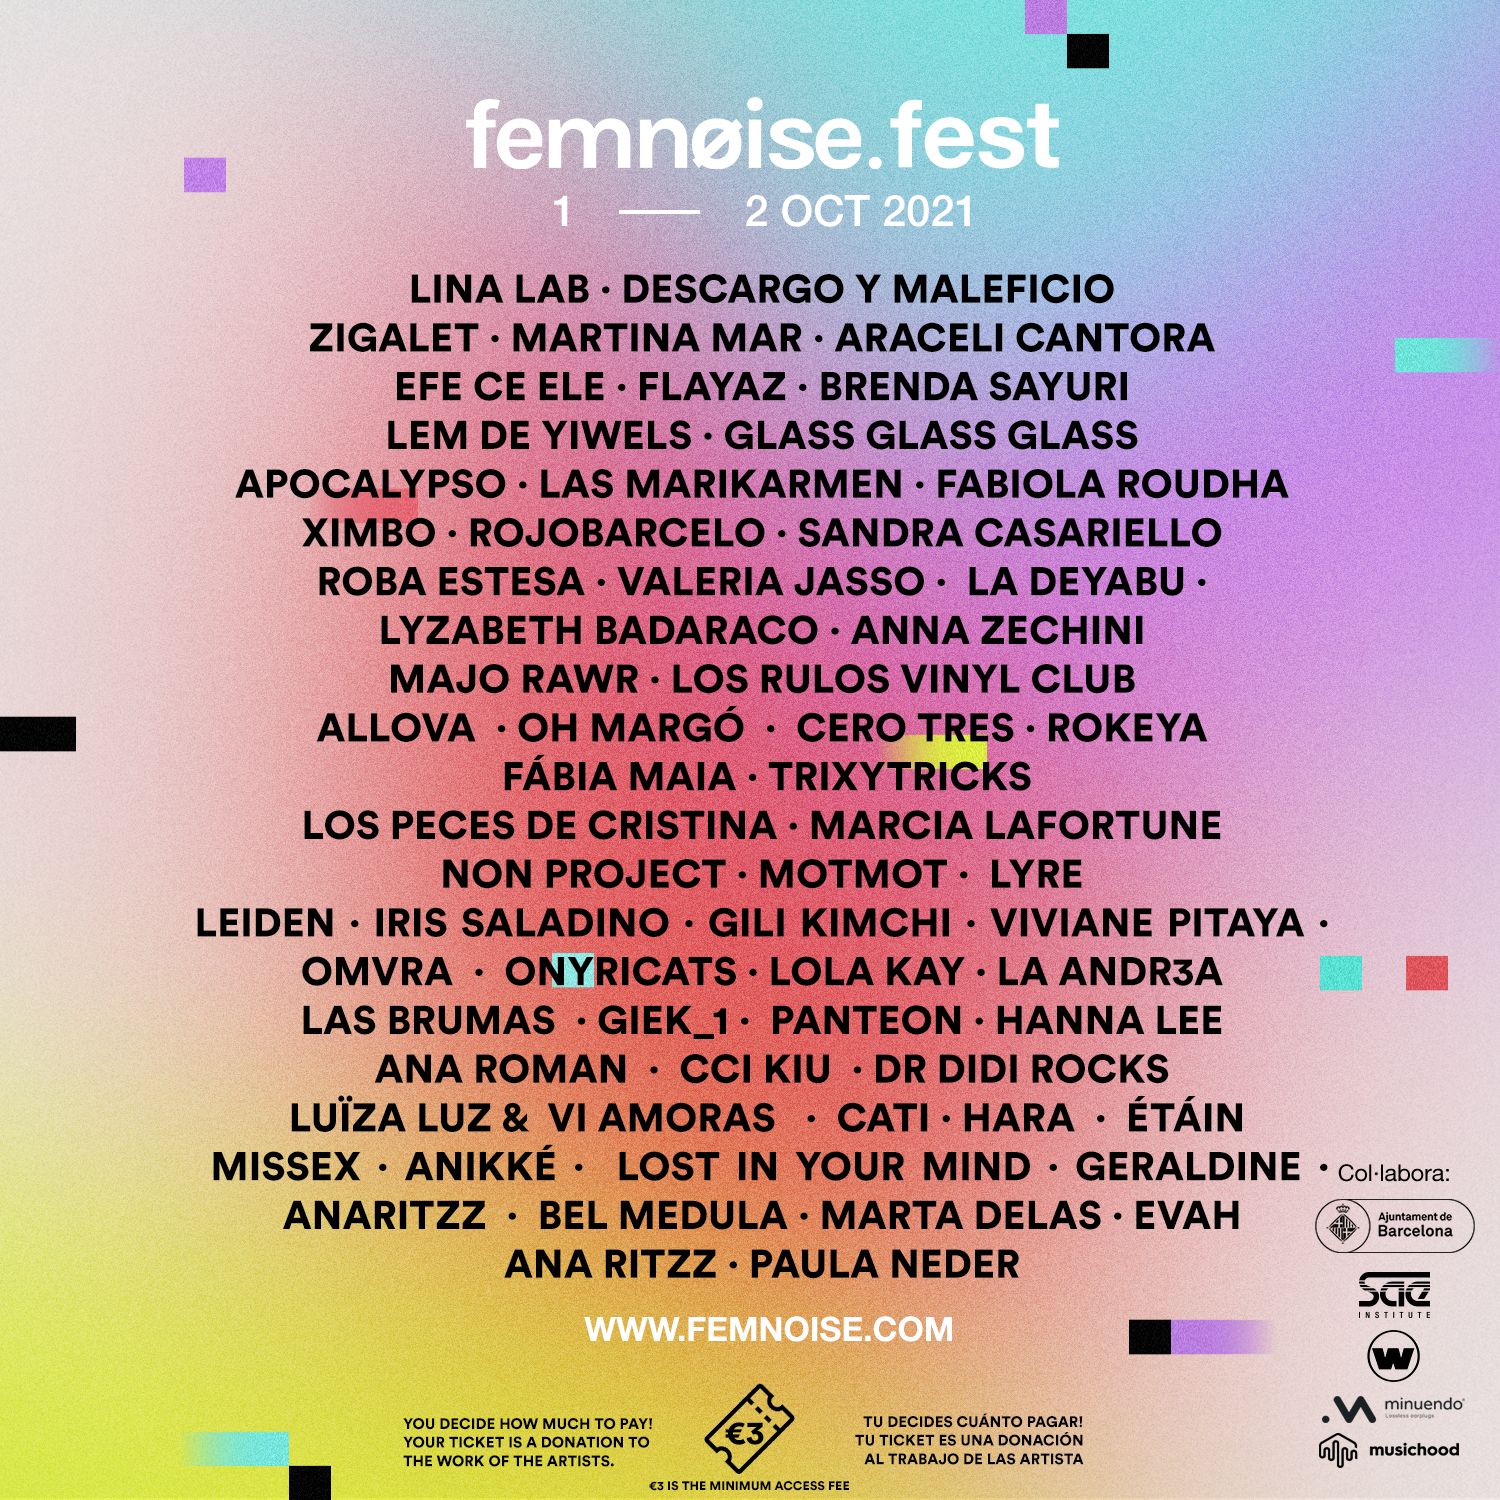  Conoce todos los detalles del festival Femnoise Fest